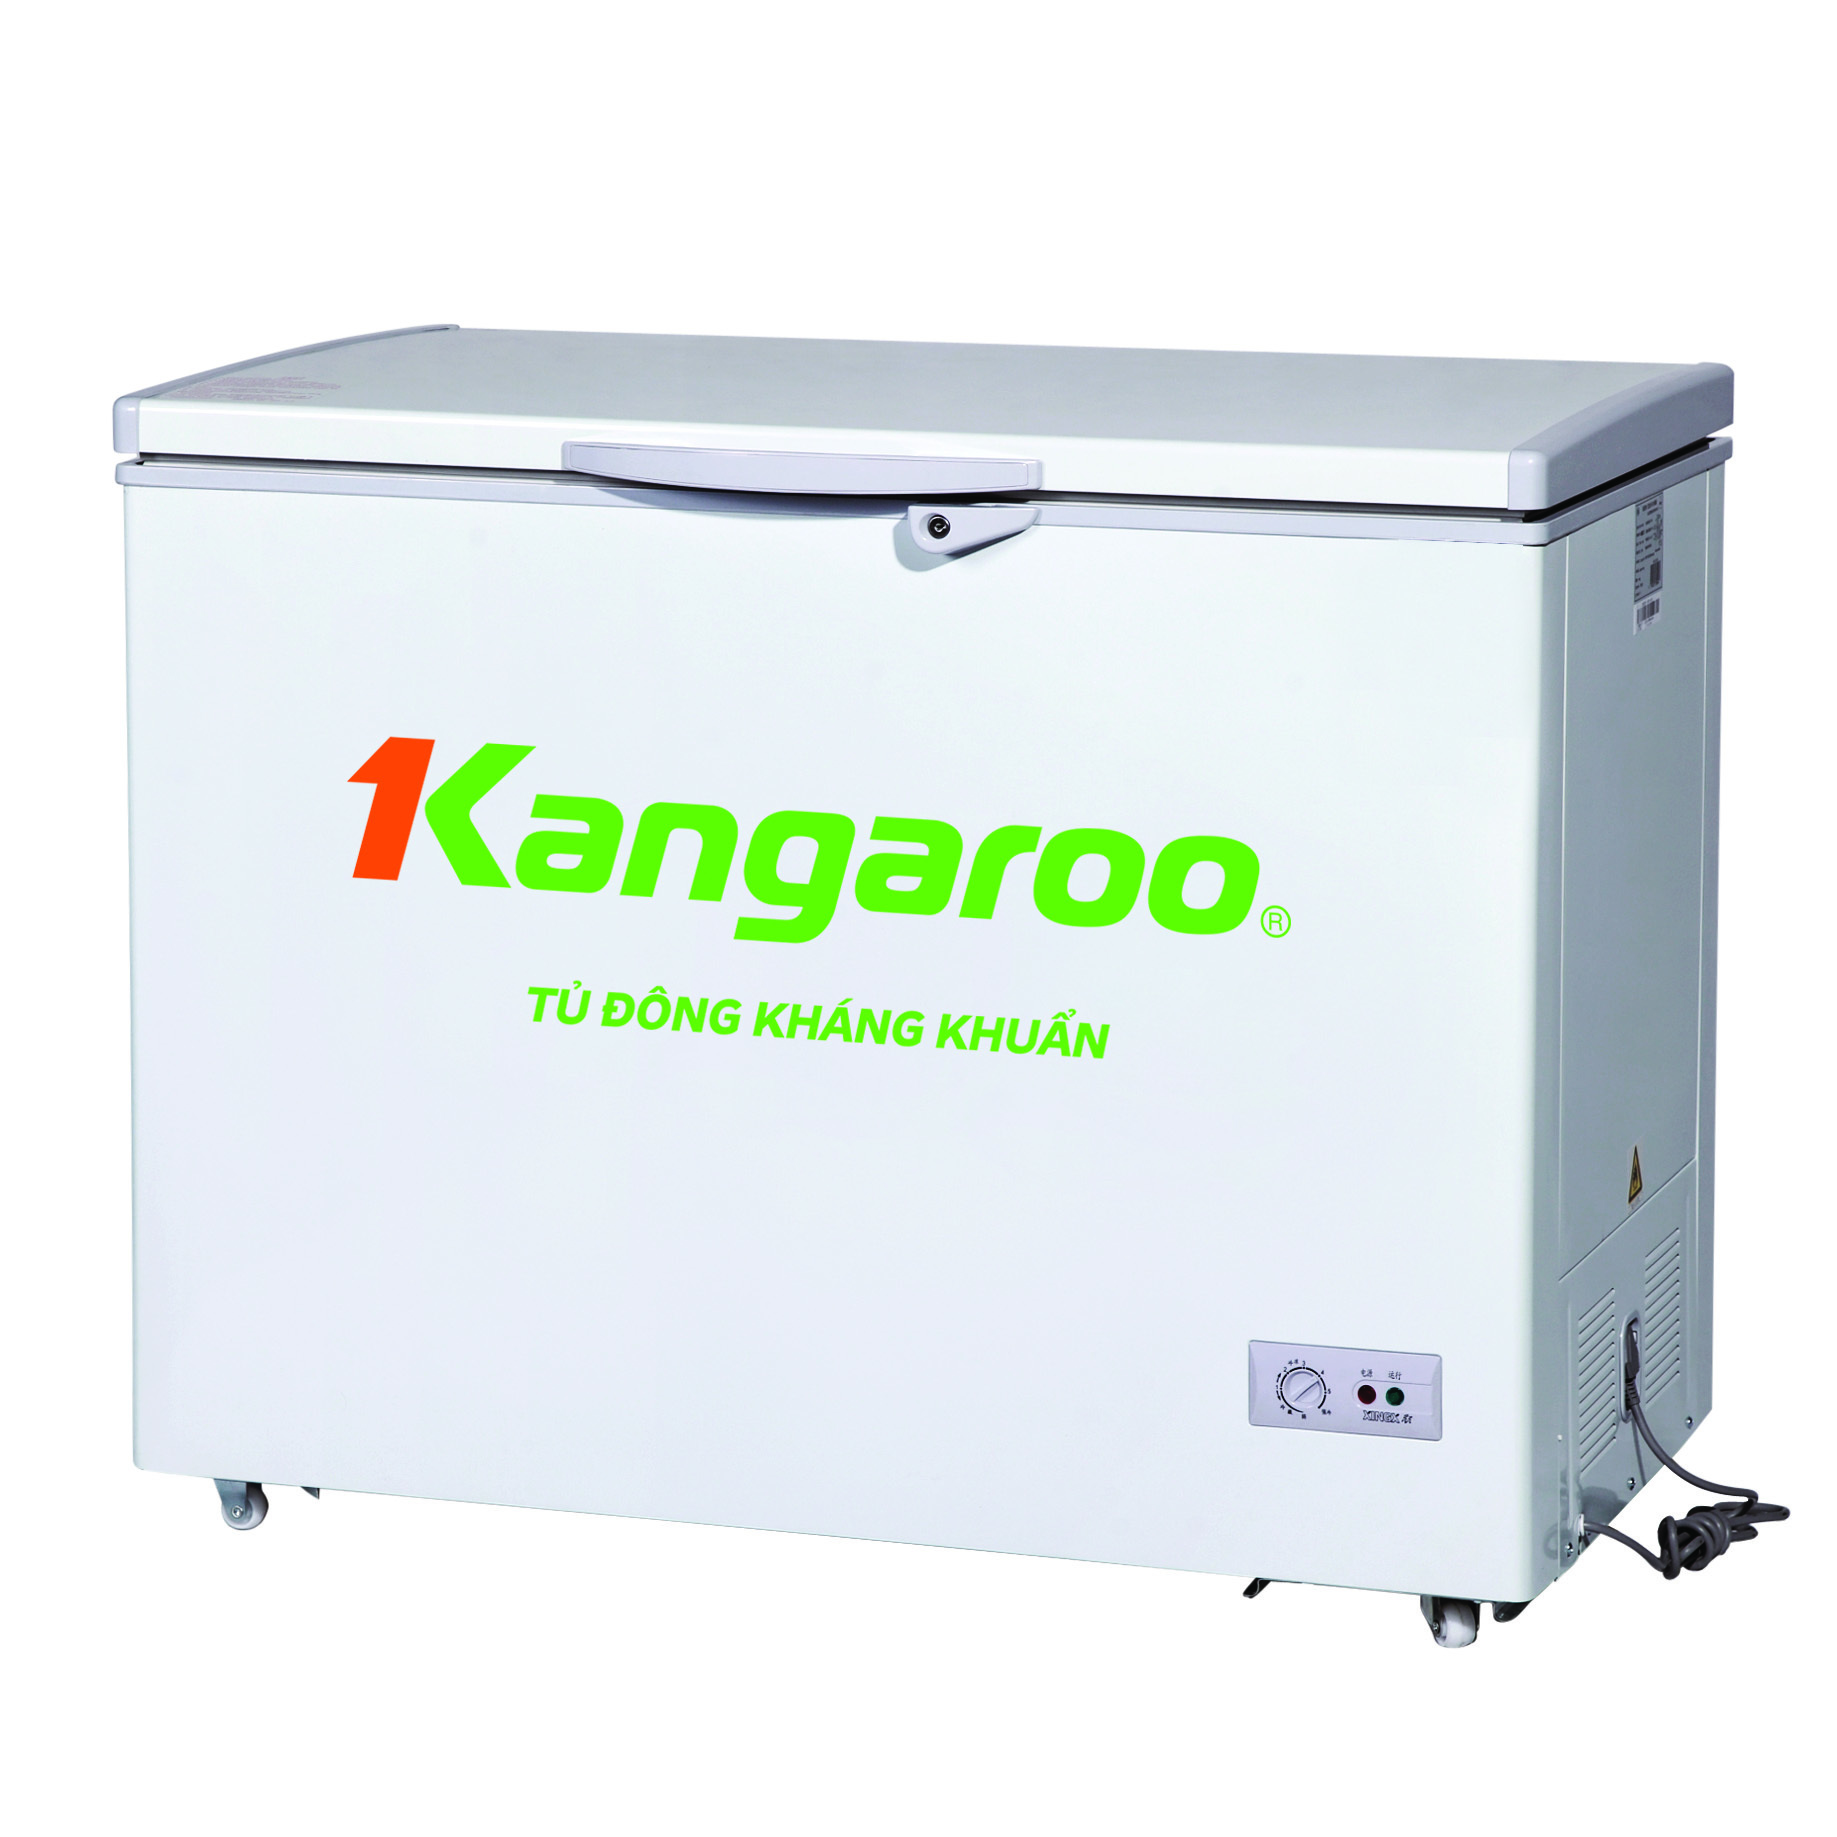 Tủ đông Kangaroo inverter 1 ngăn 292 lít KG292C1